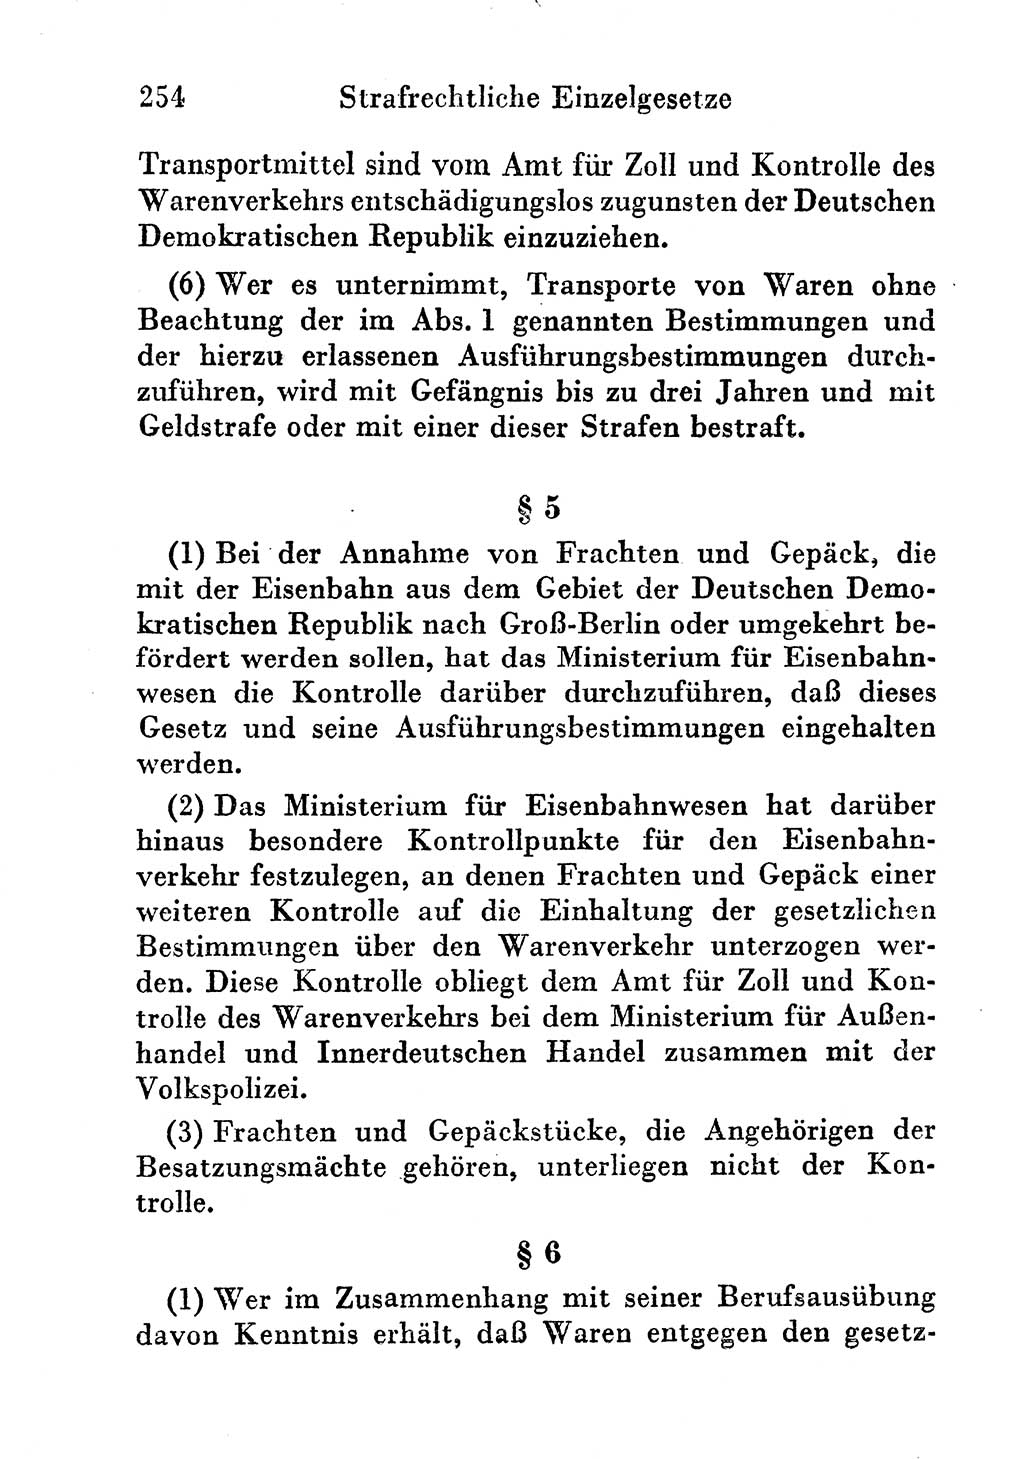 Strafgesetzbuch (StGB) und andere Strafgesetze [Deutsche Demokratische Republik (DDR)] 1956, Seite 254 (StGB Strafges. DDR 1956, S. 254)